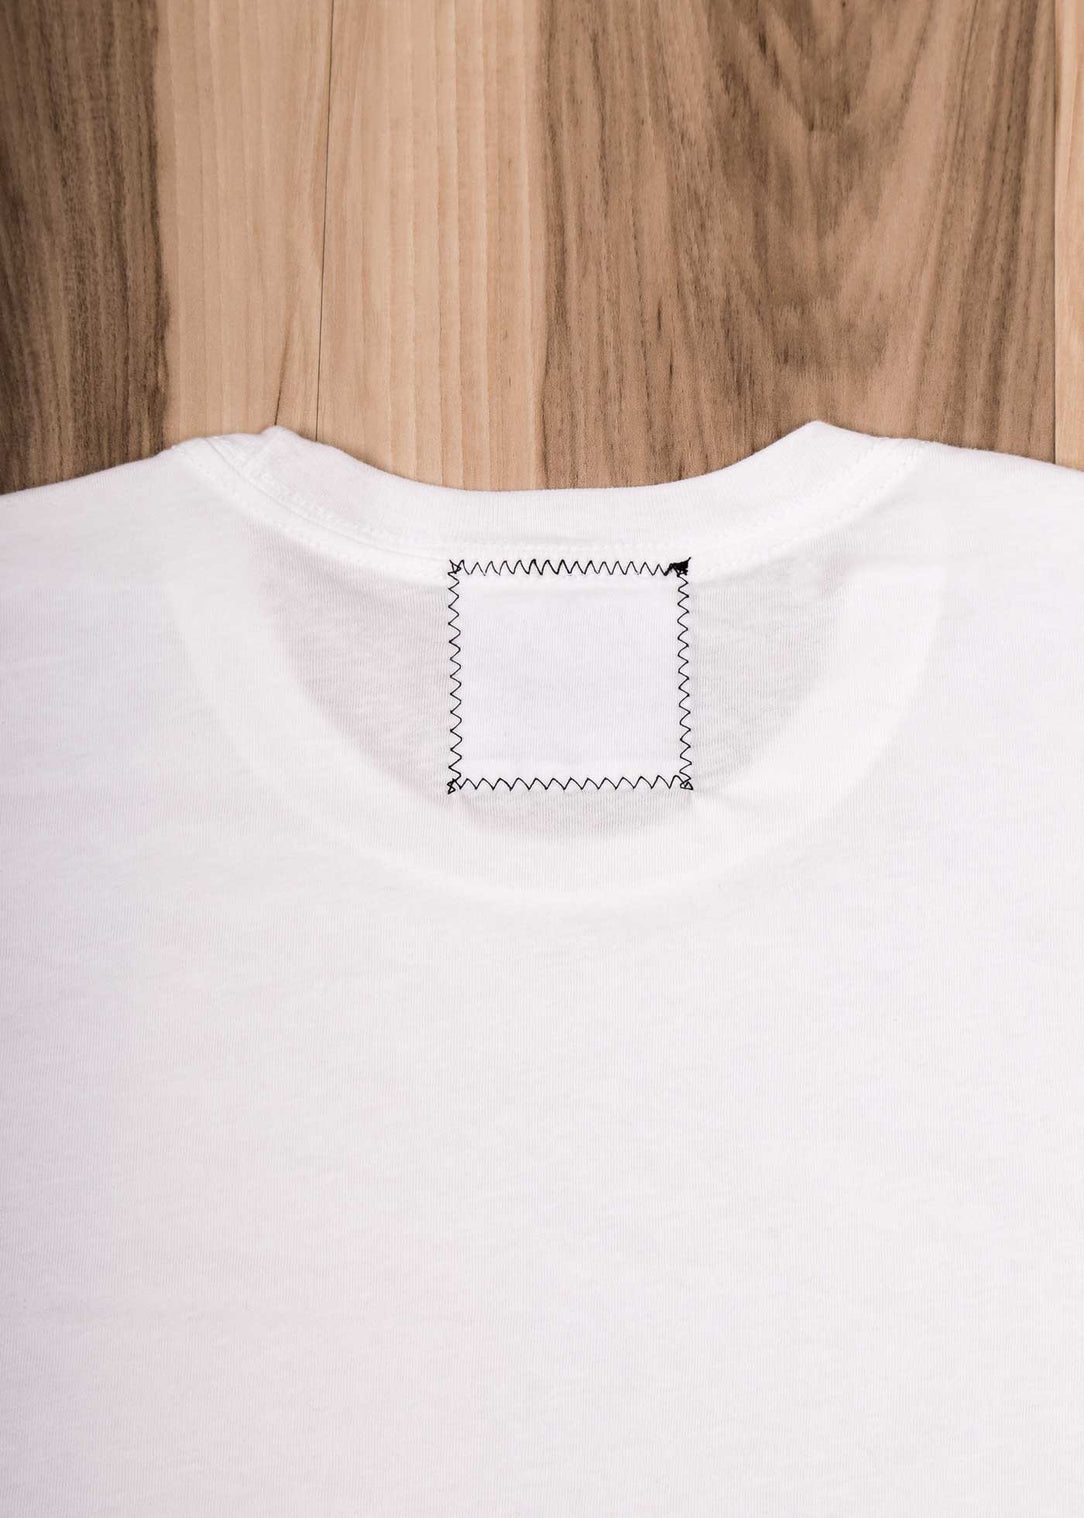 Kid T-Shirt Top — Dangerous Men\'s Classic Space Shelf White